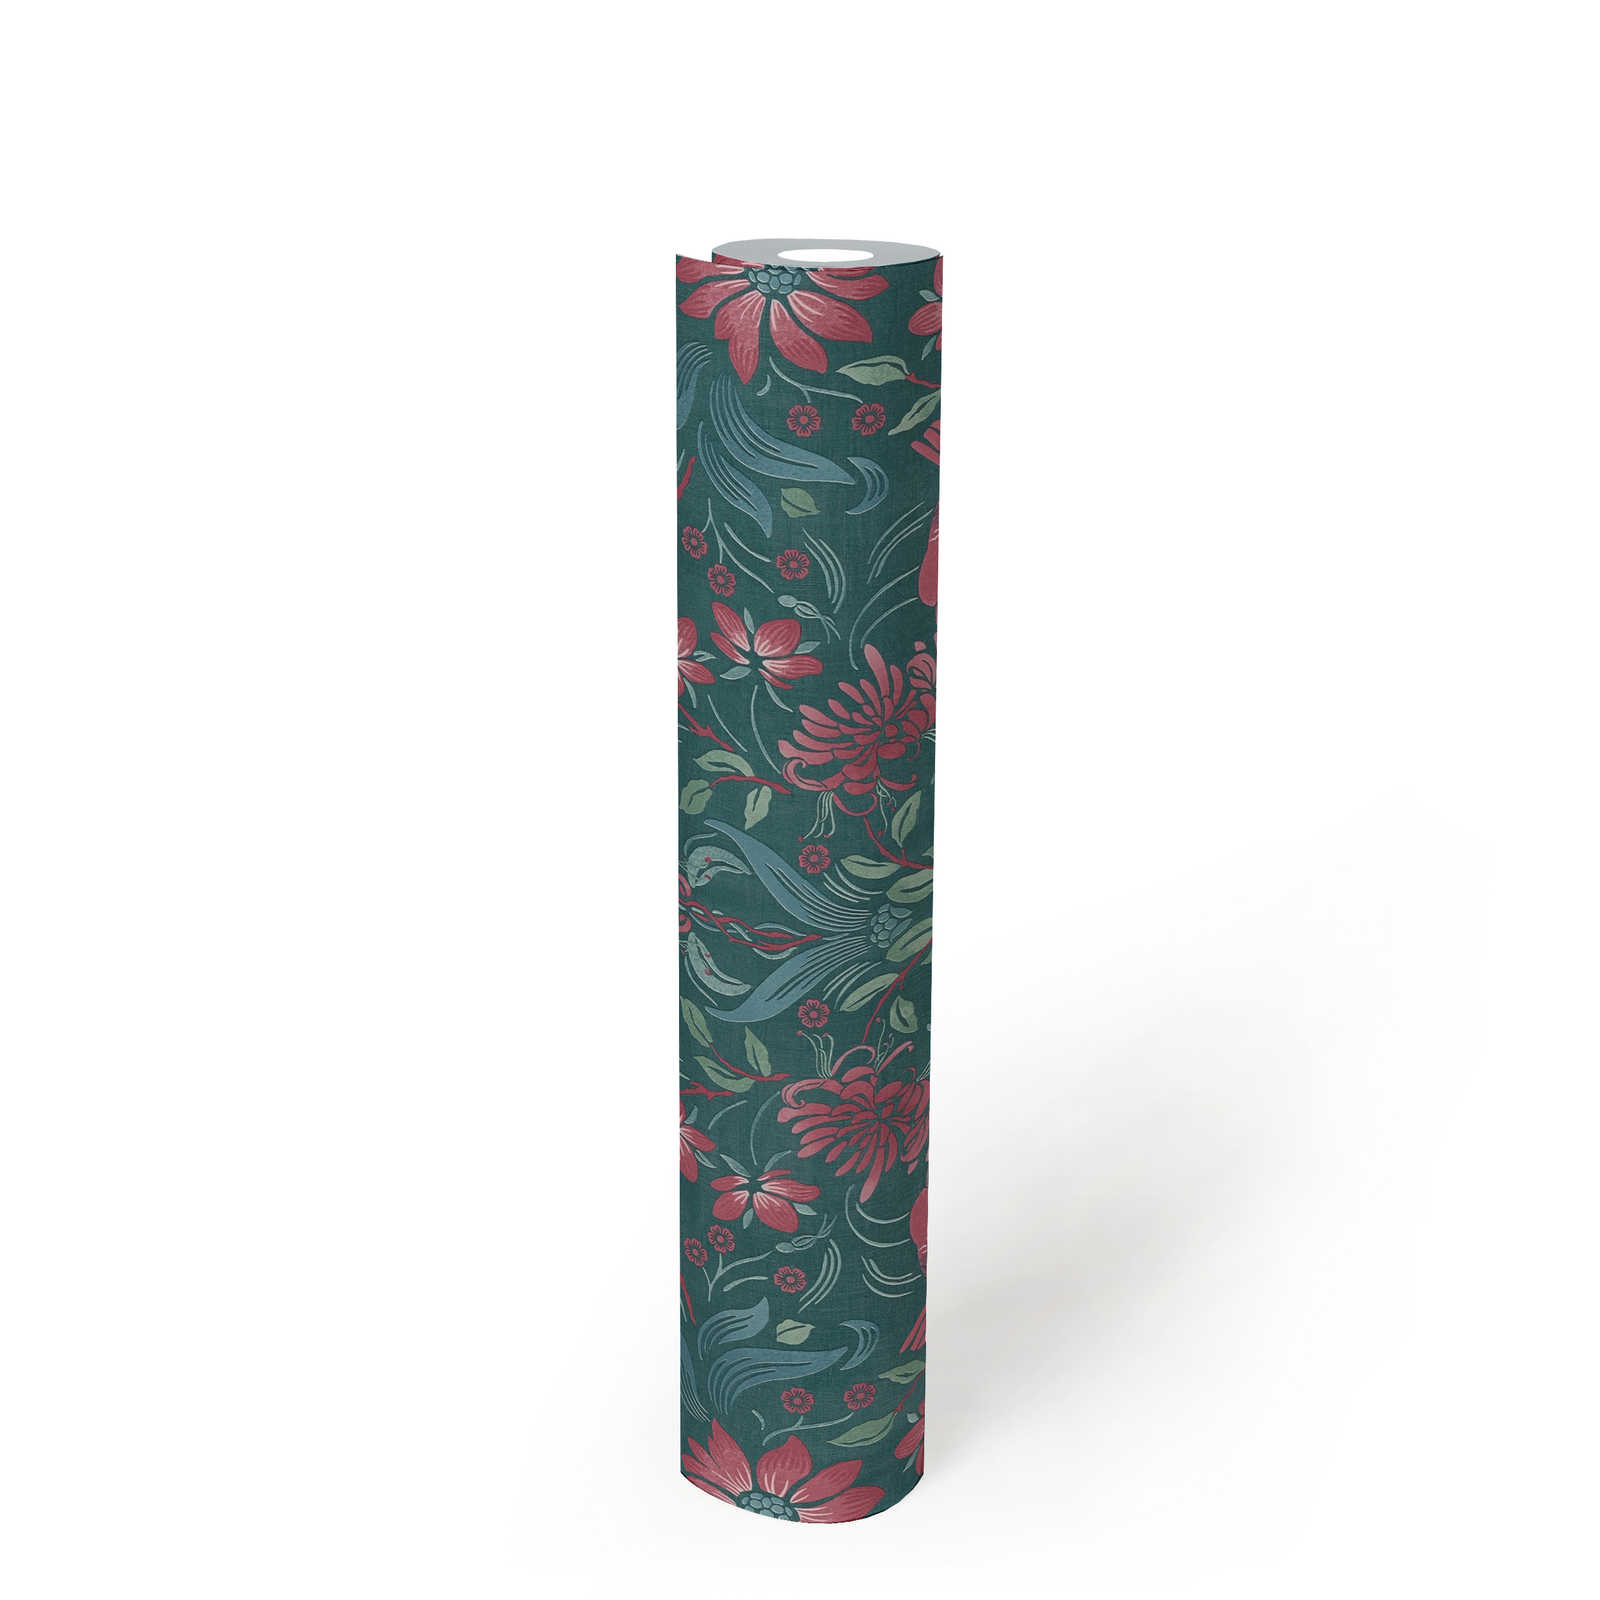             Papel pintado no tejido floral con flores y pájaros - verde oscuro, rosa, verde
        